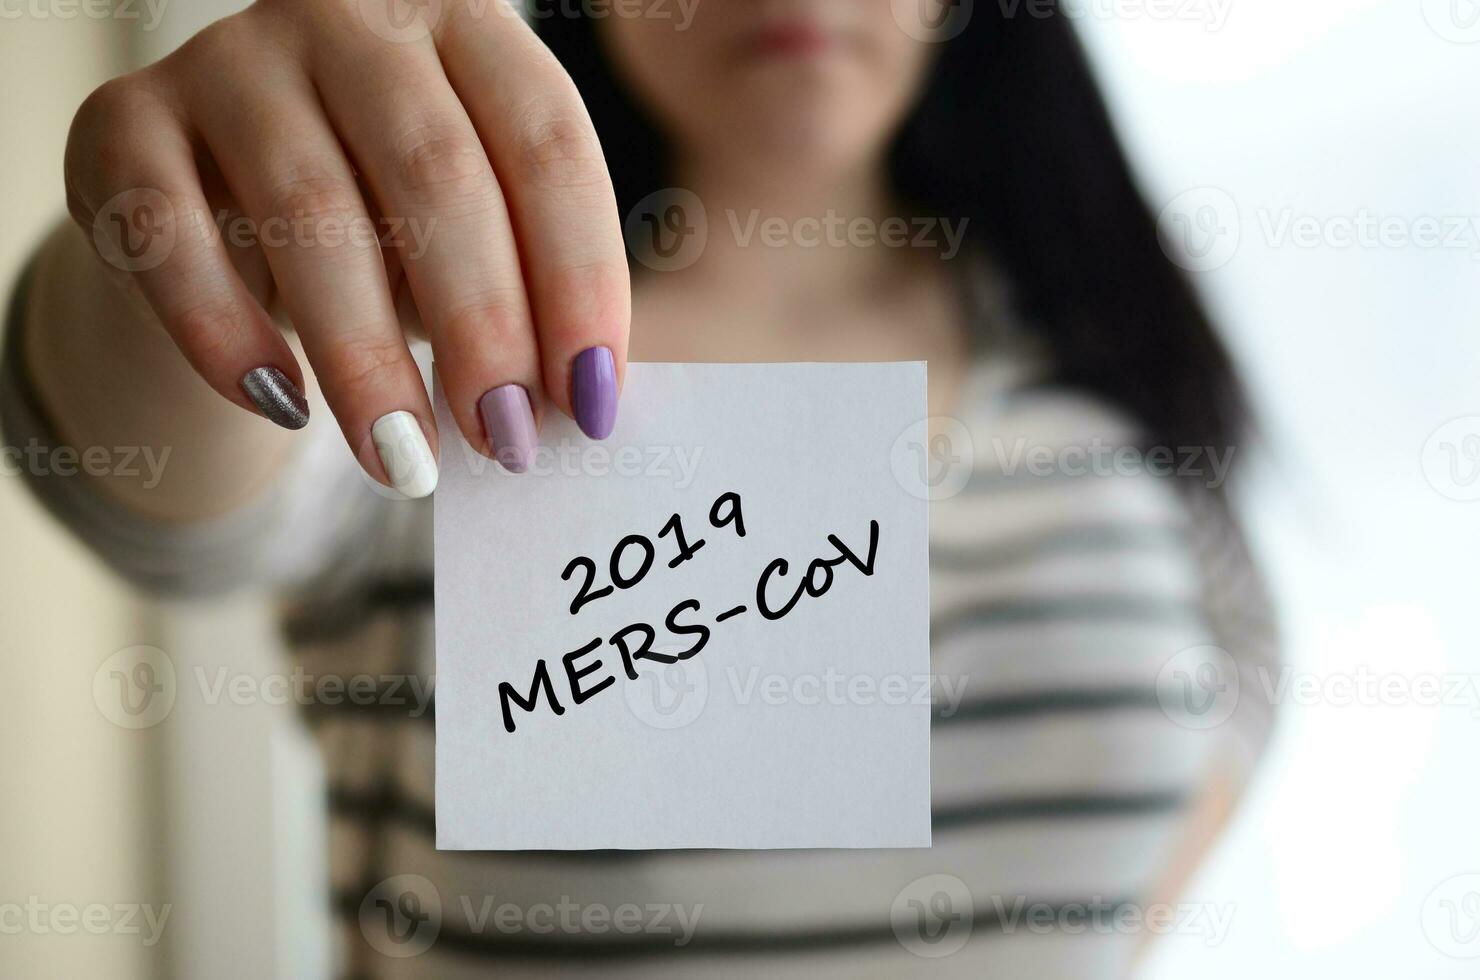 mers-CoV romanzo corona virus iscrizione su carta nel femmina mano. mezzo est respiratorio sindrome. Cinese infezione foto